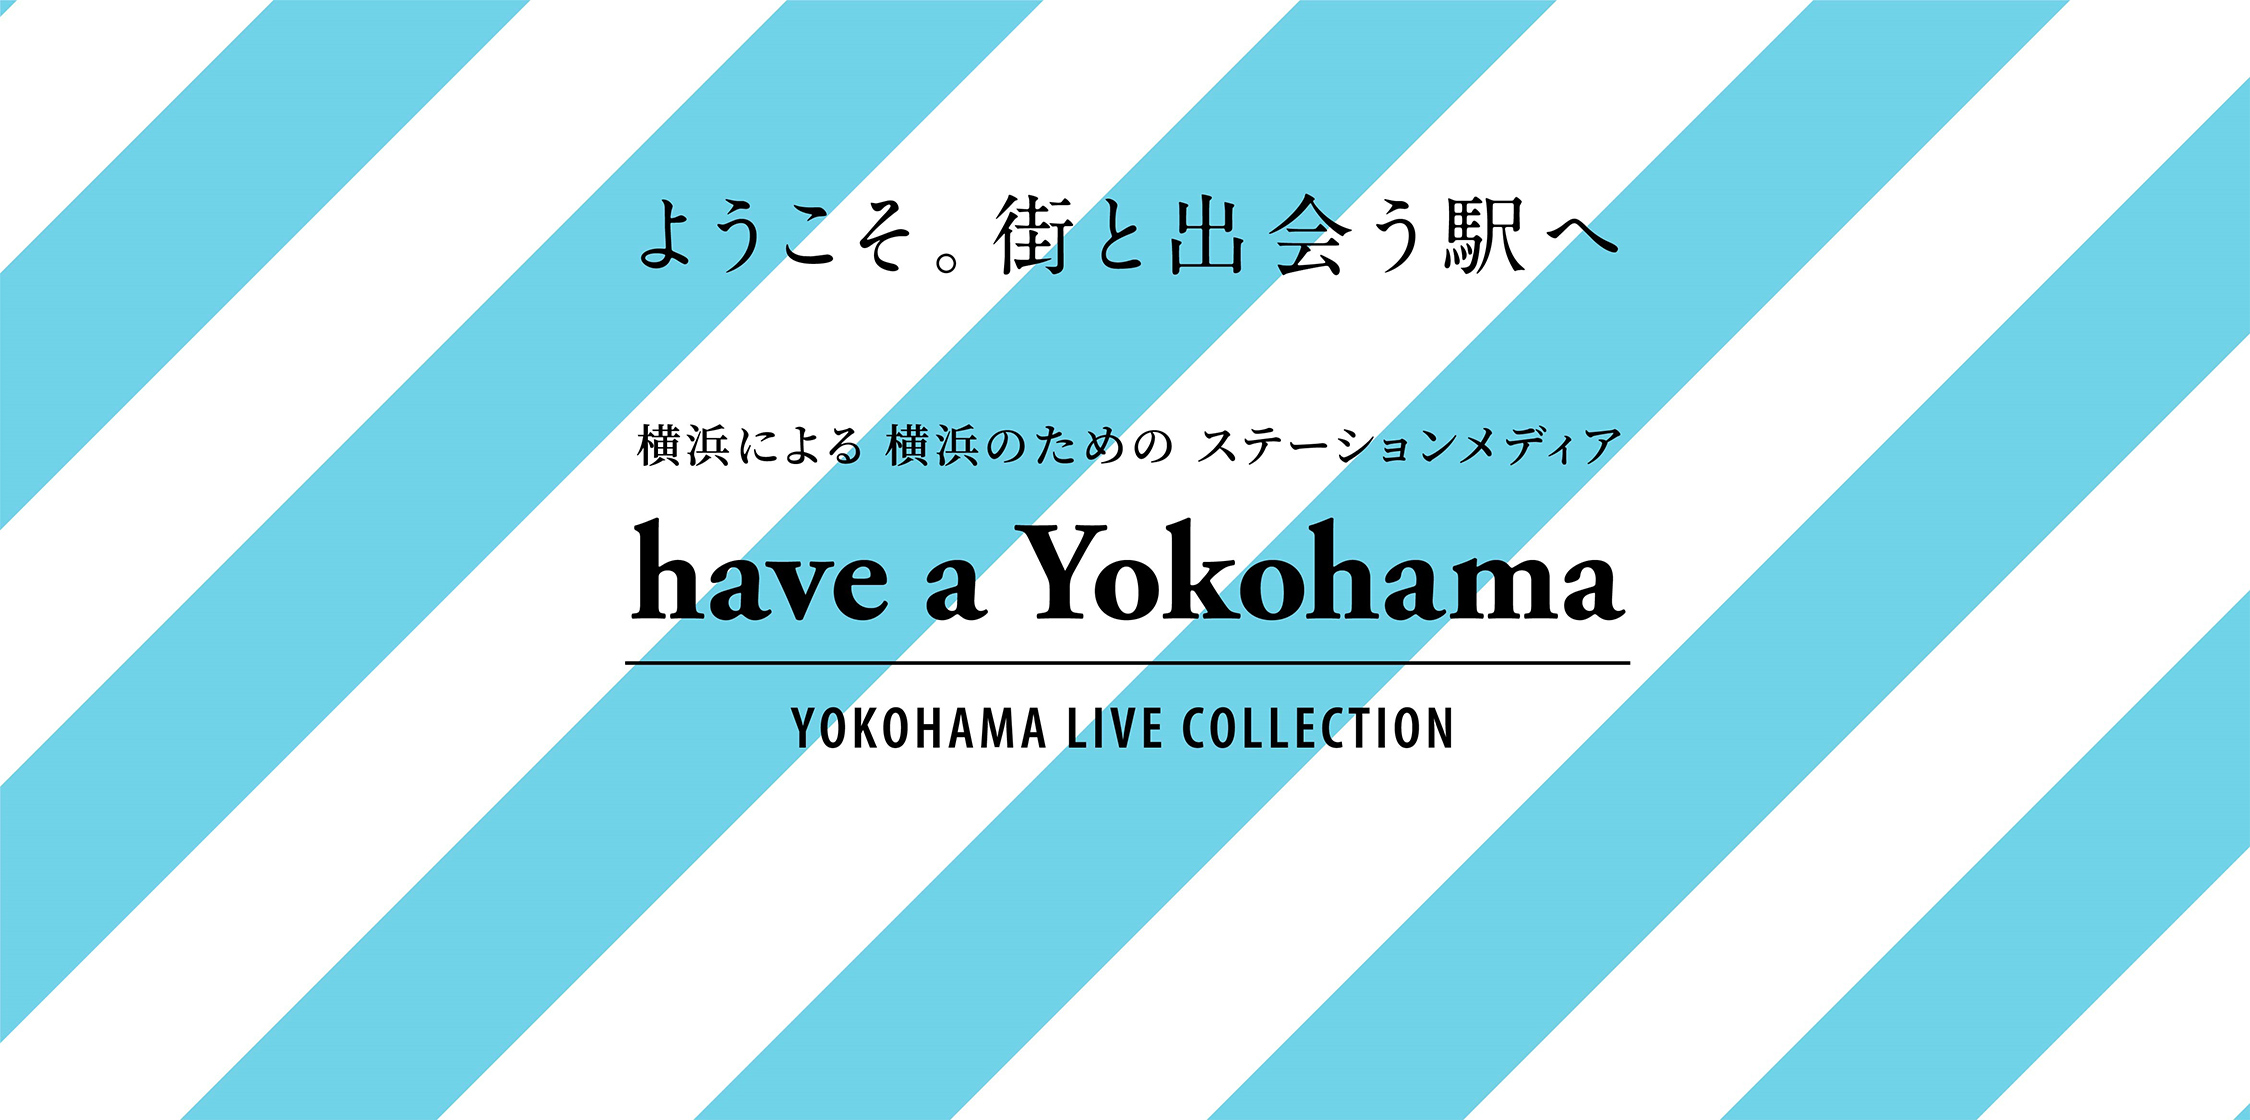 ようこそ。街と出会う駅へ 横浜による 横浜のための ステーションメディア have a Yokohama YOKOHAMA LIVE COLECTION